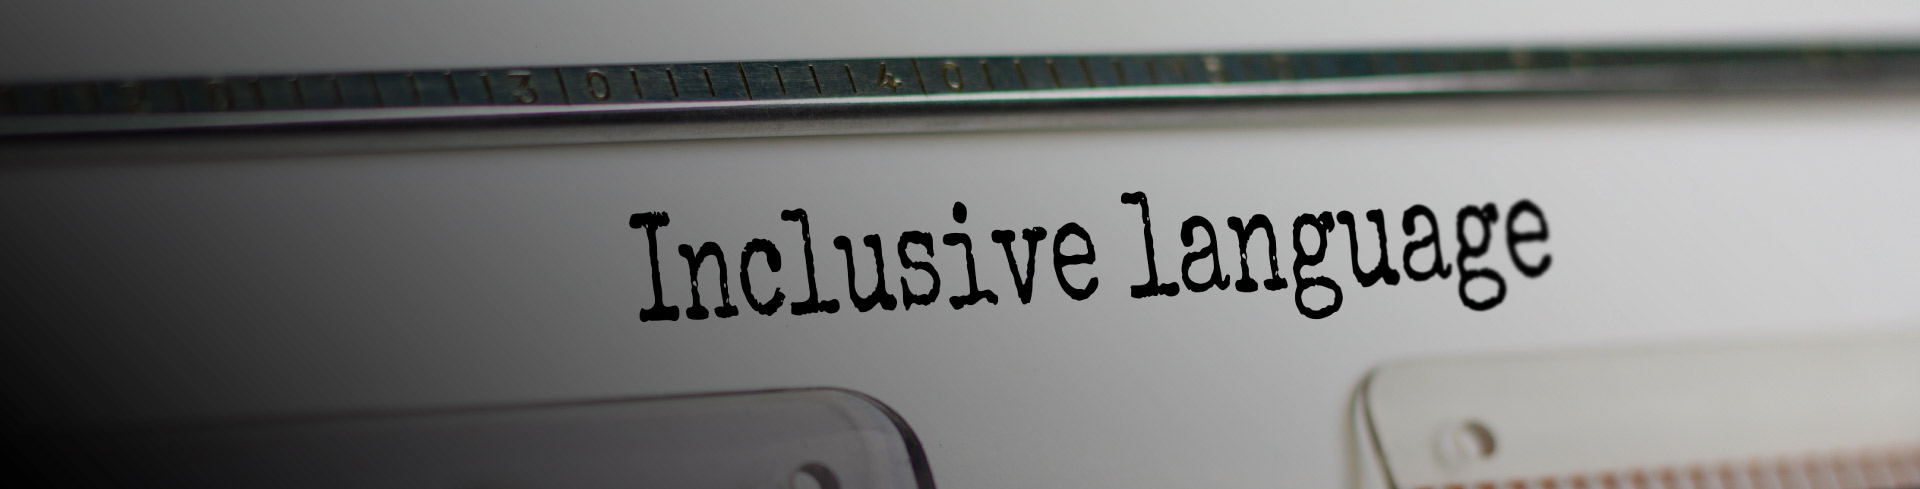 Género e inclusión: Herramientas para el uso cotidiano del lenguaje inclusivo